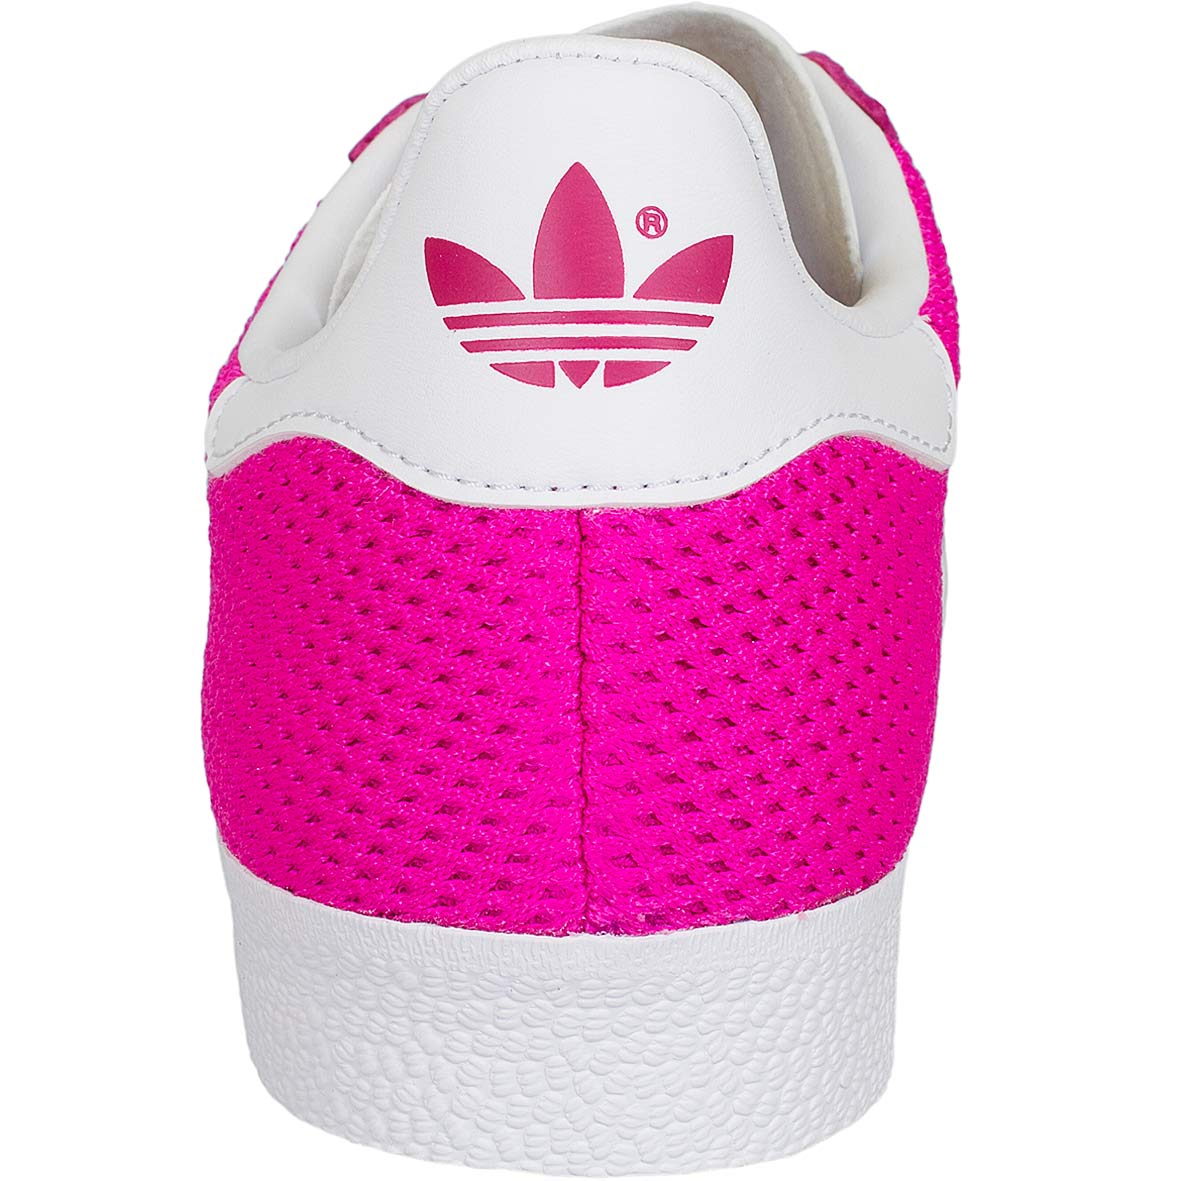 ☆ Adidas Originals Damen Sneaker Gazelle pink/weiß - hier bestellen!